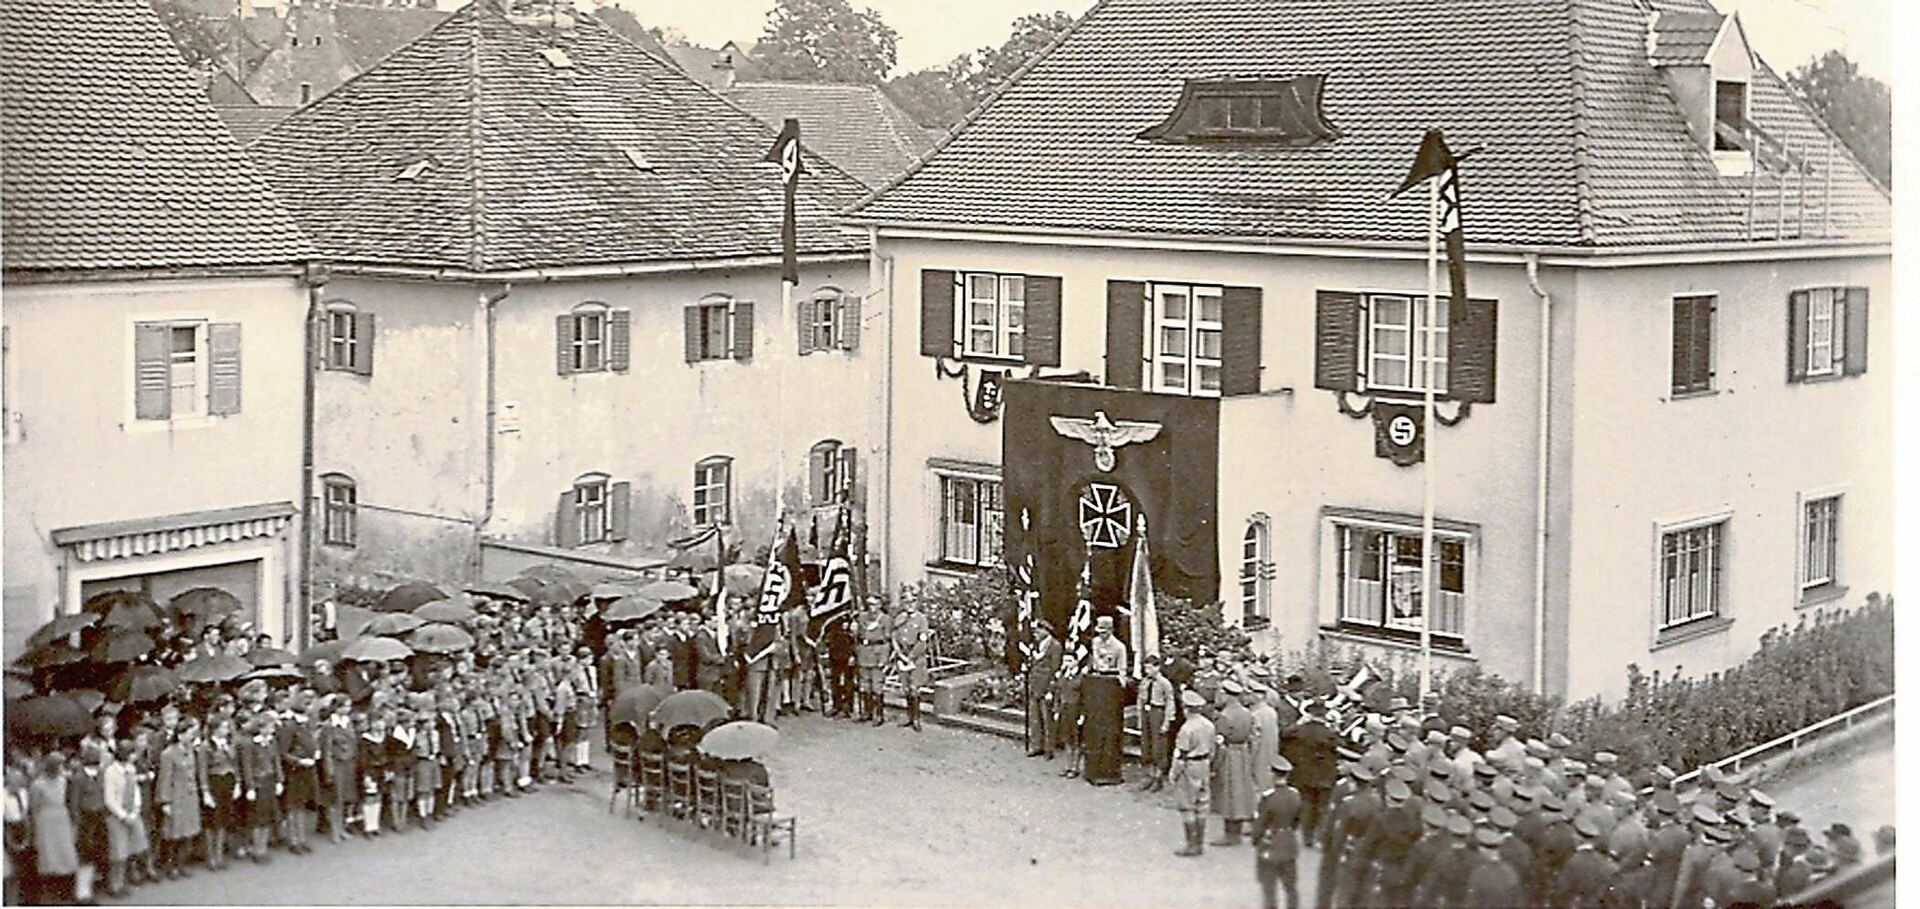 Am 21. März 1933 jubelten in Schierling hunderte Menschen den Nazis als neuen Machthabern zu, die sich sehr bald als Verbrecher erwiesen, für nicht davor zurückschreckten, Millionen Menschen zu töten. Foto: Archiv Fritz Wallner